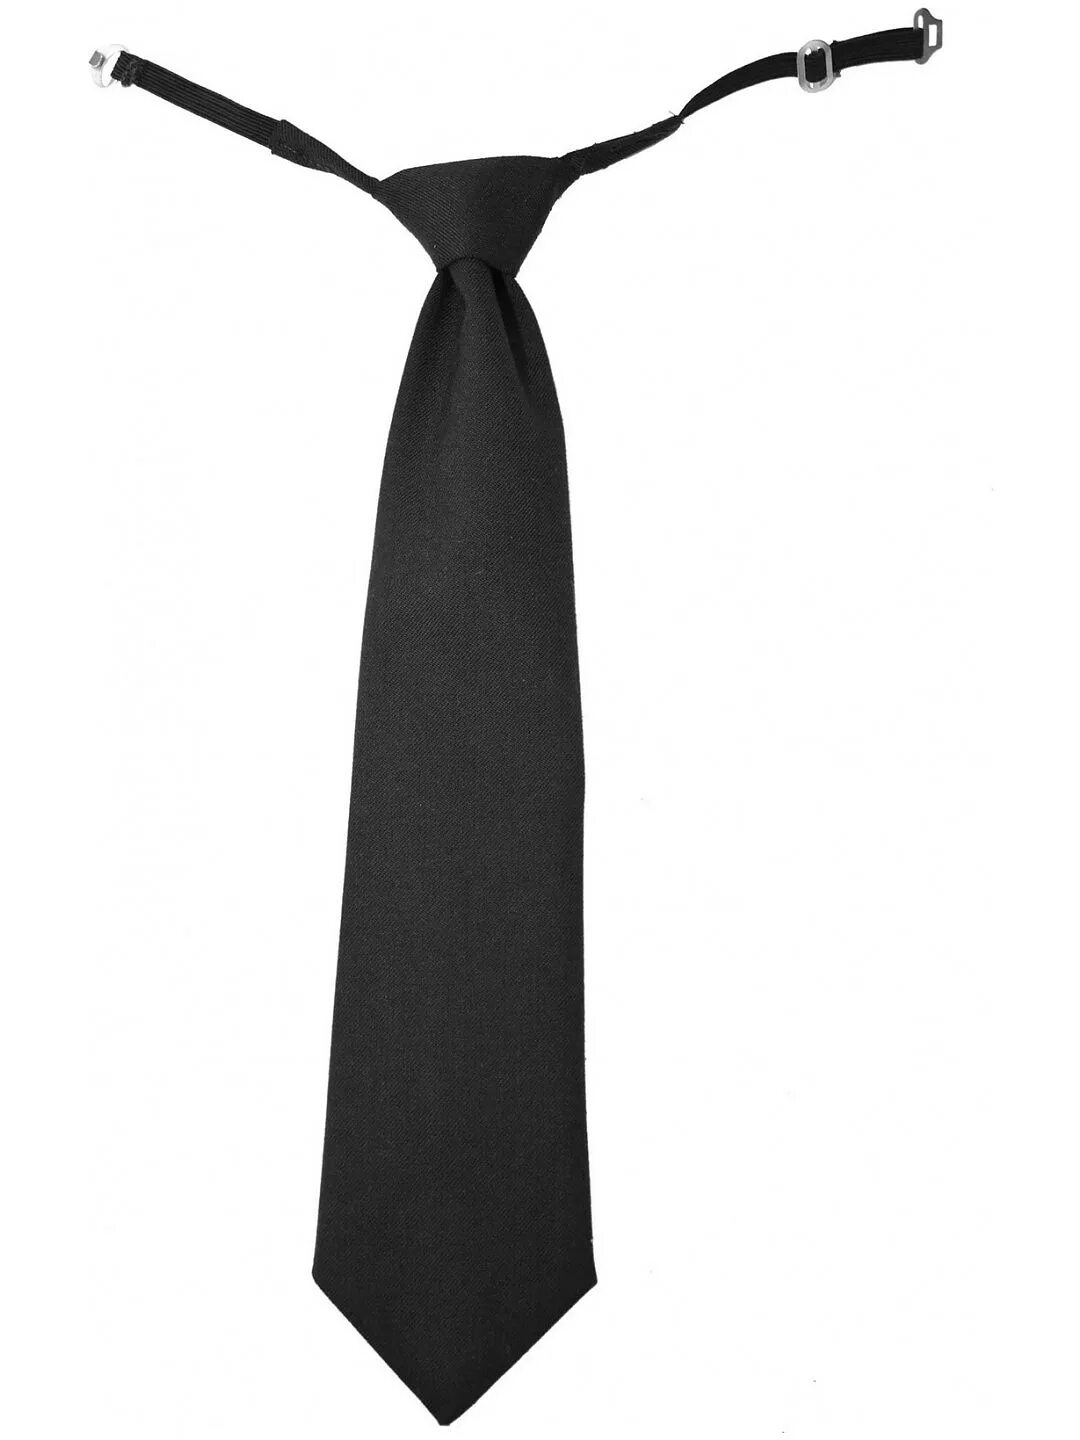 Галстук. Черный галстук. Прозрачный галстук. Галстук мужской.